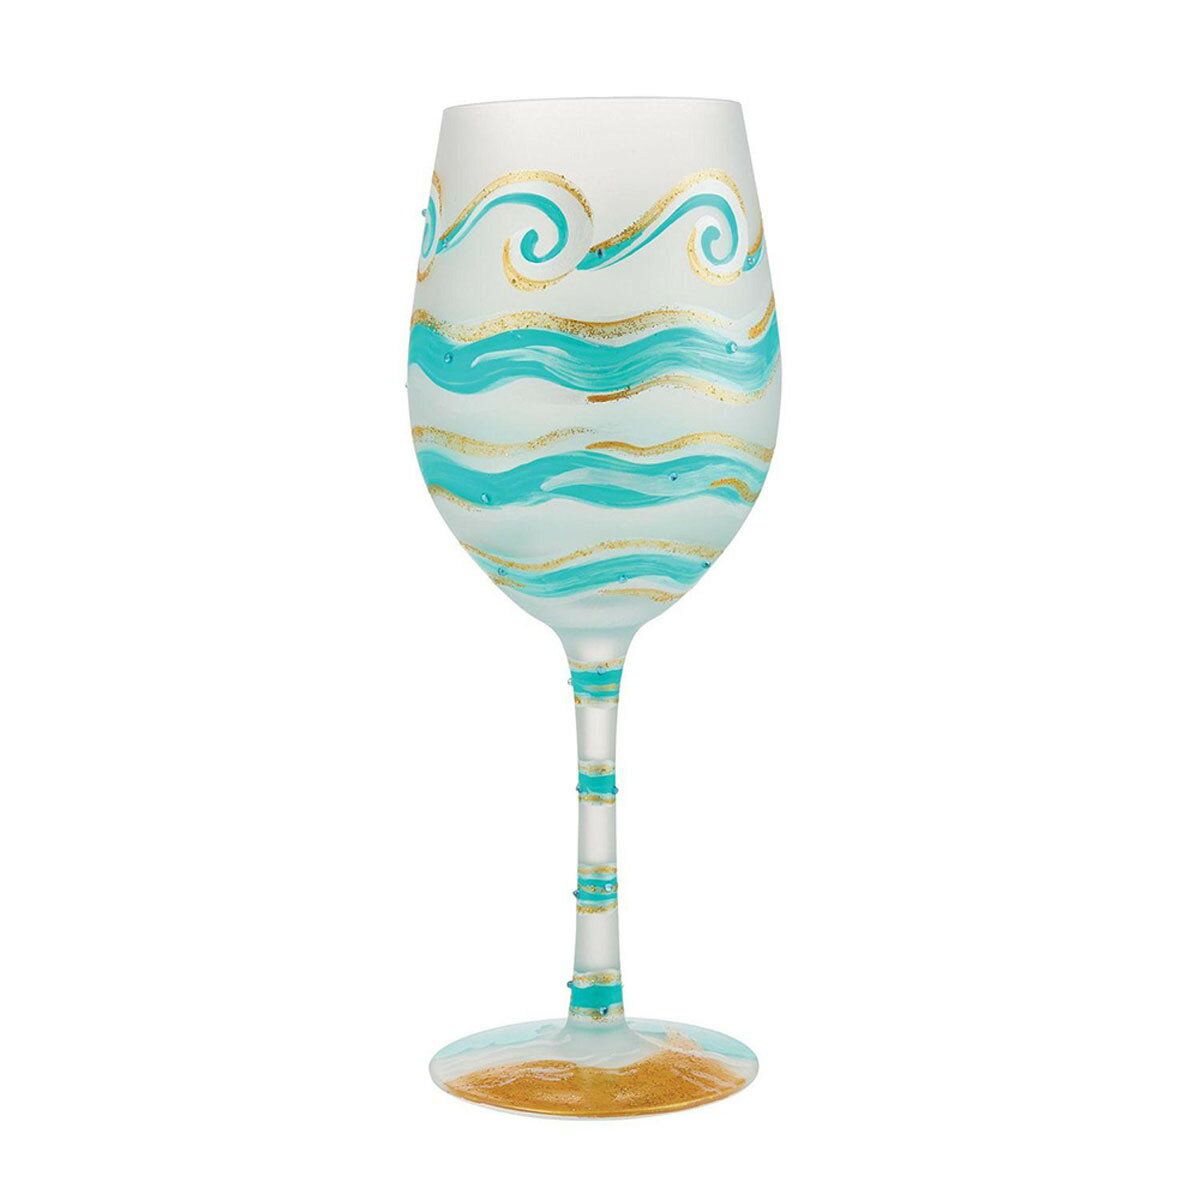 ロリータ LOLITA グラス ワイングラス 食器 コップ 6012479 Eternal Tides 永久に続く潮汐 海 エメラルドグリーン+ゴールド系